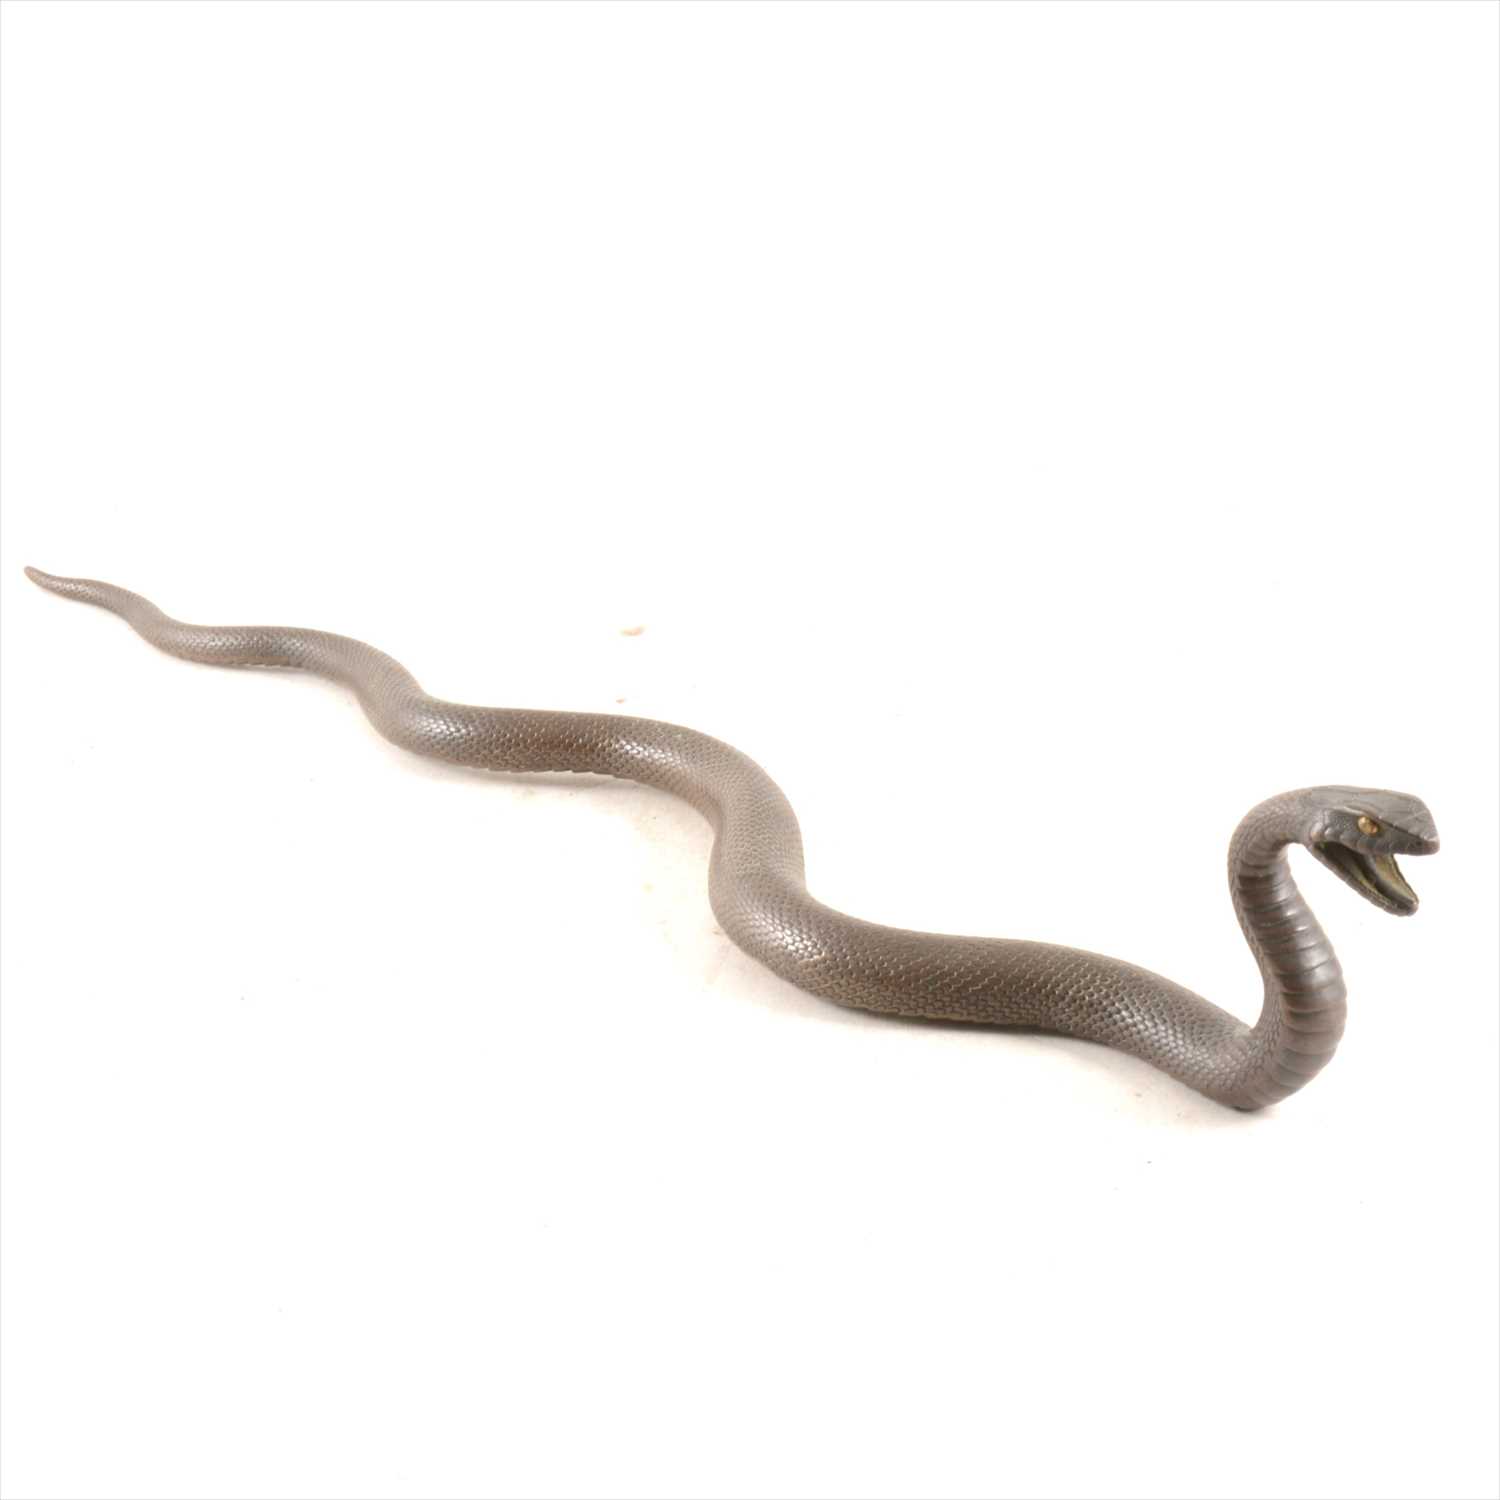 237 - A Japanese bronze model of a snake, probably Meiji